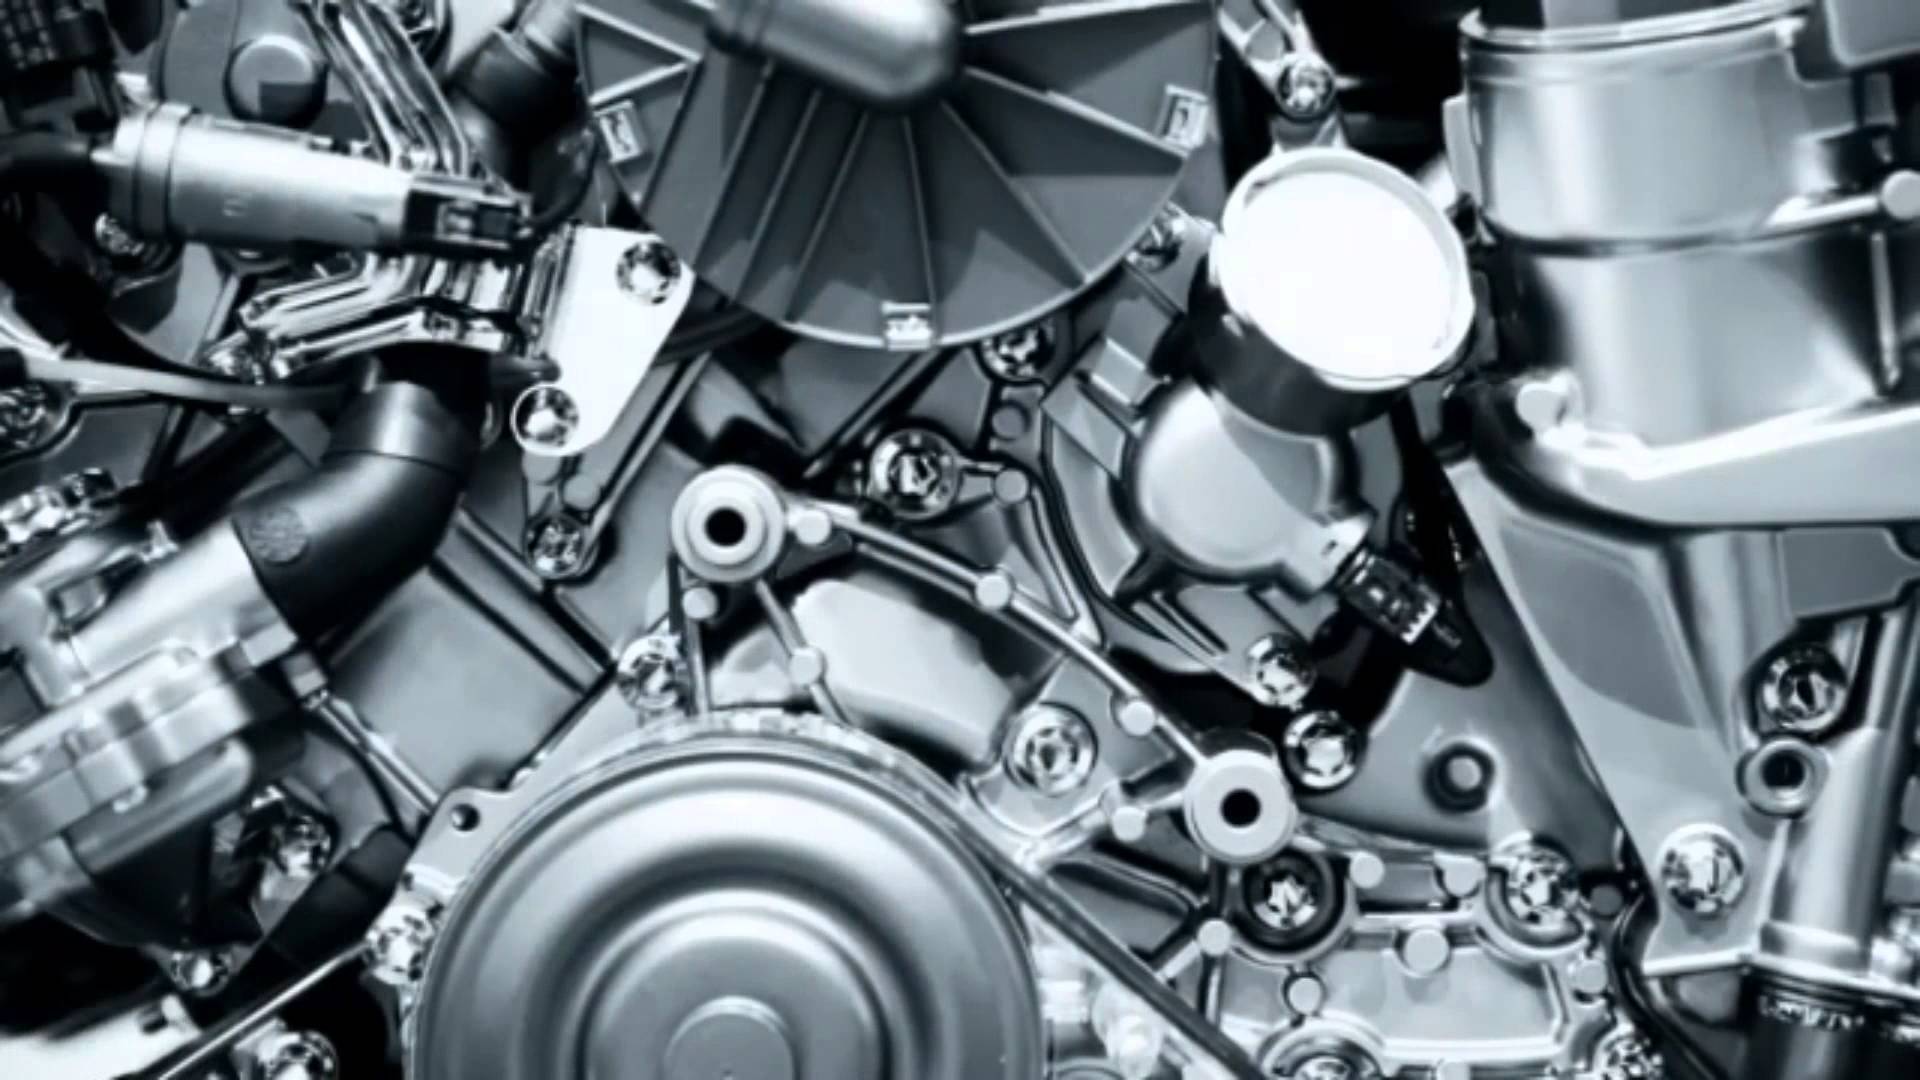 Engine Gear Mechanics Wallpaper, Mechanics Wallpaper. HD